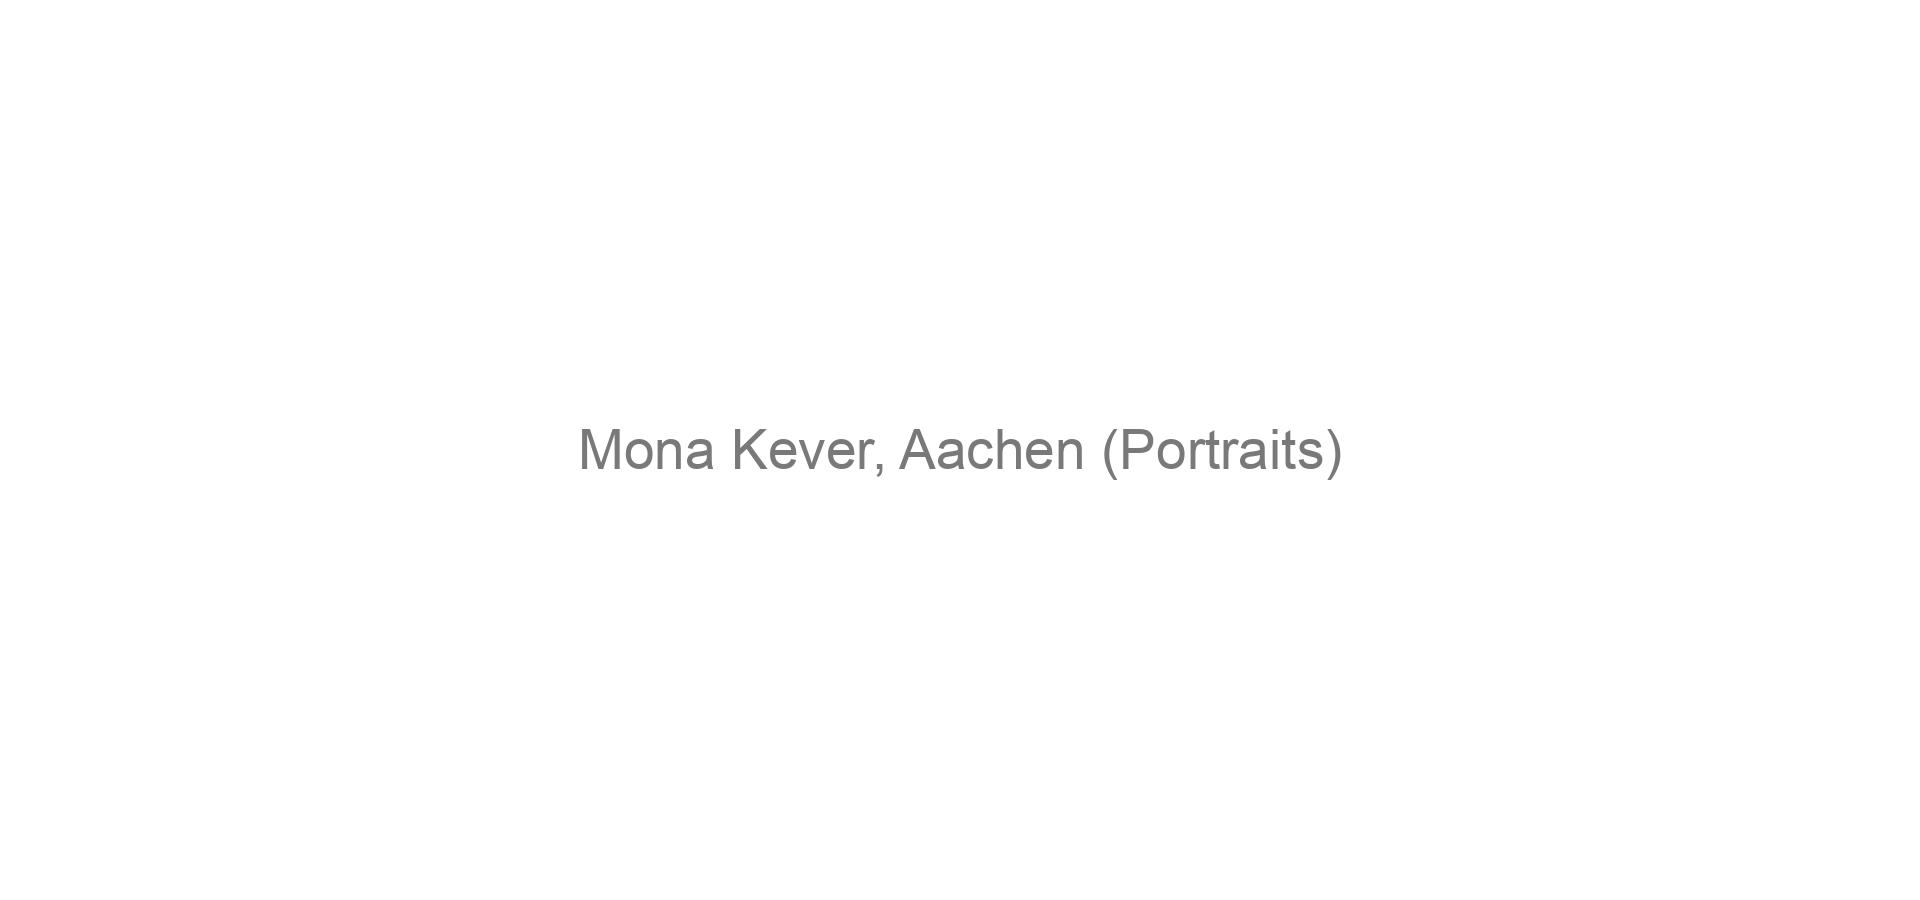 Mona Kever, Aachen (Portraits)